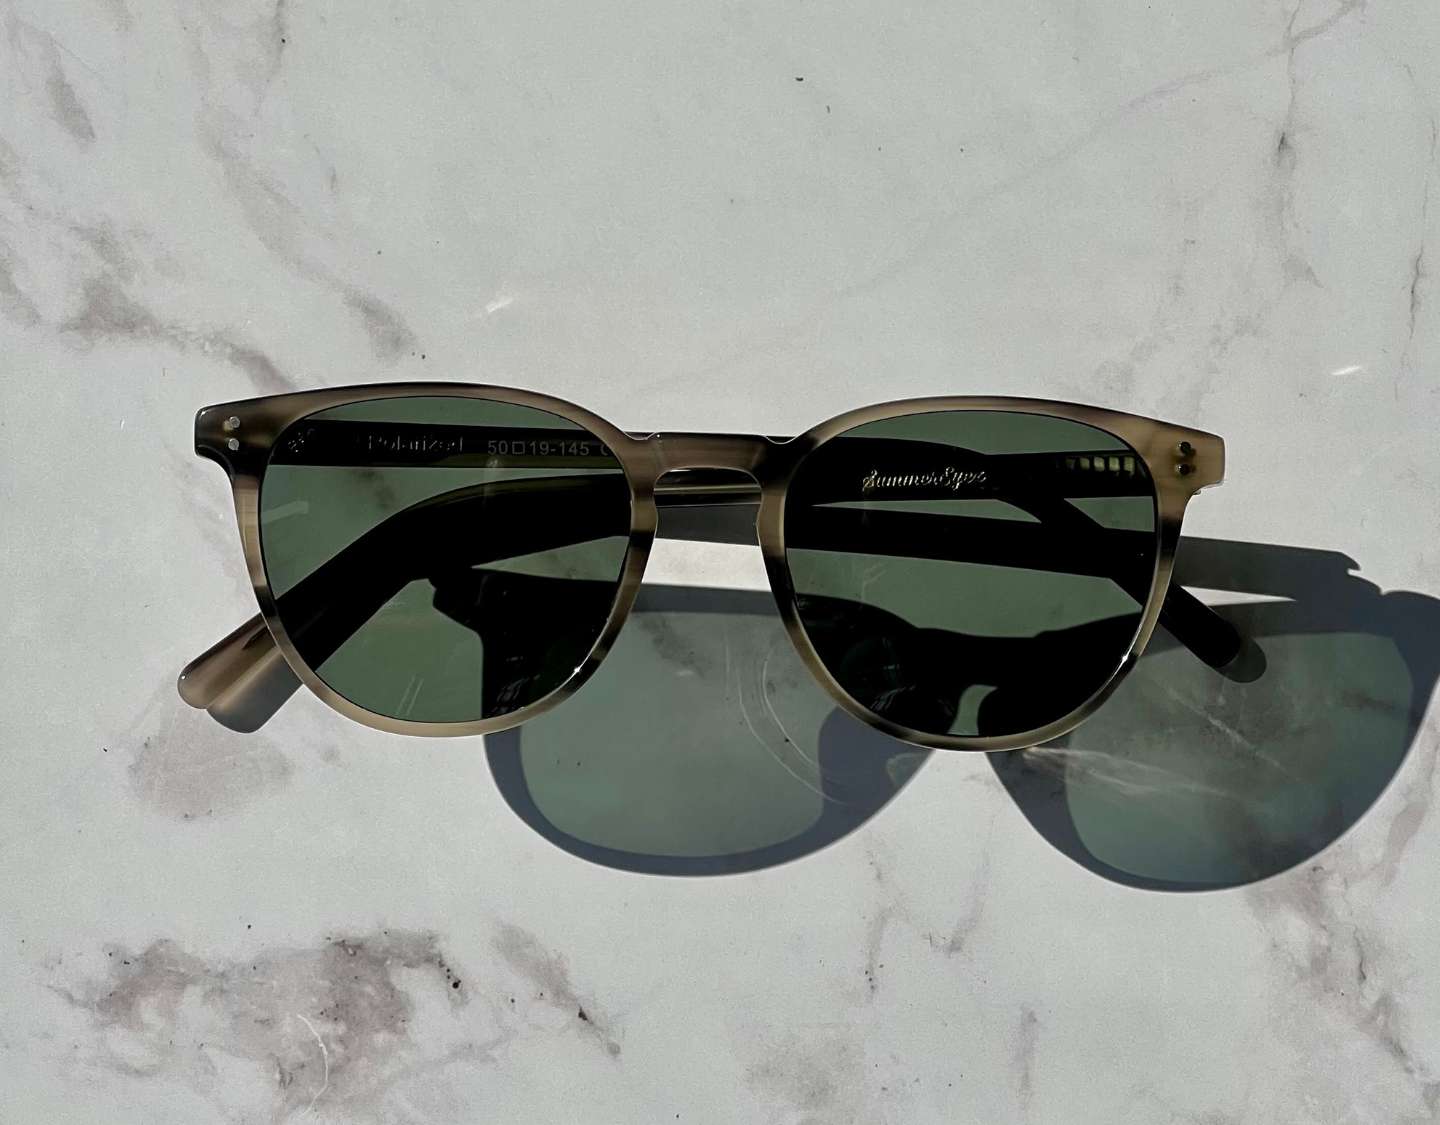 Glenelg Polarised Sunglasses SummerEyez 